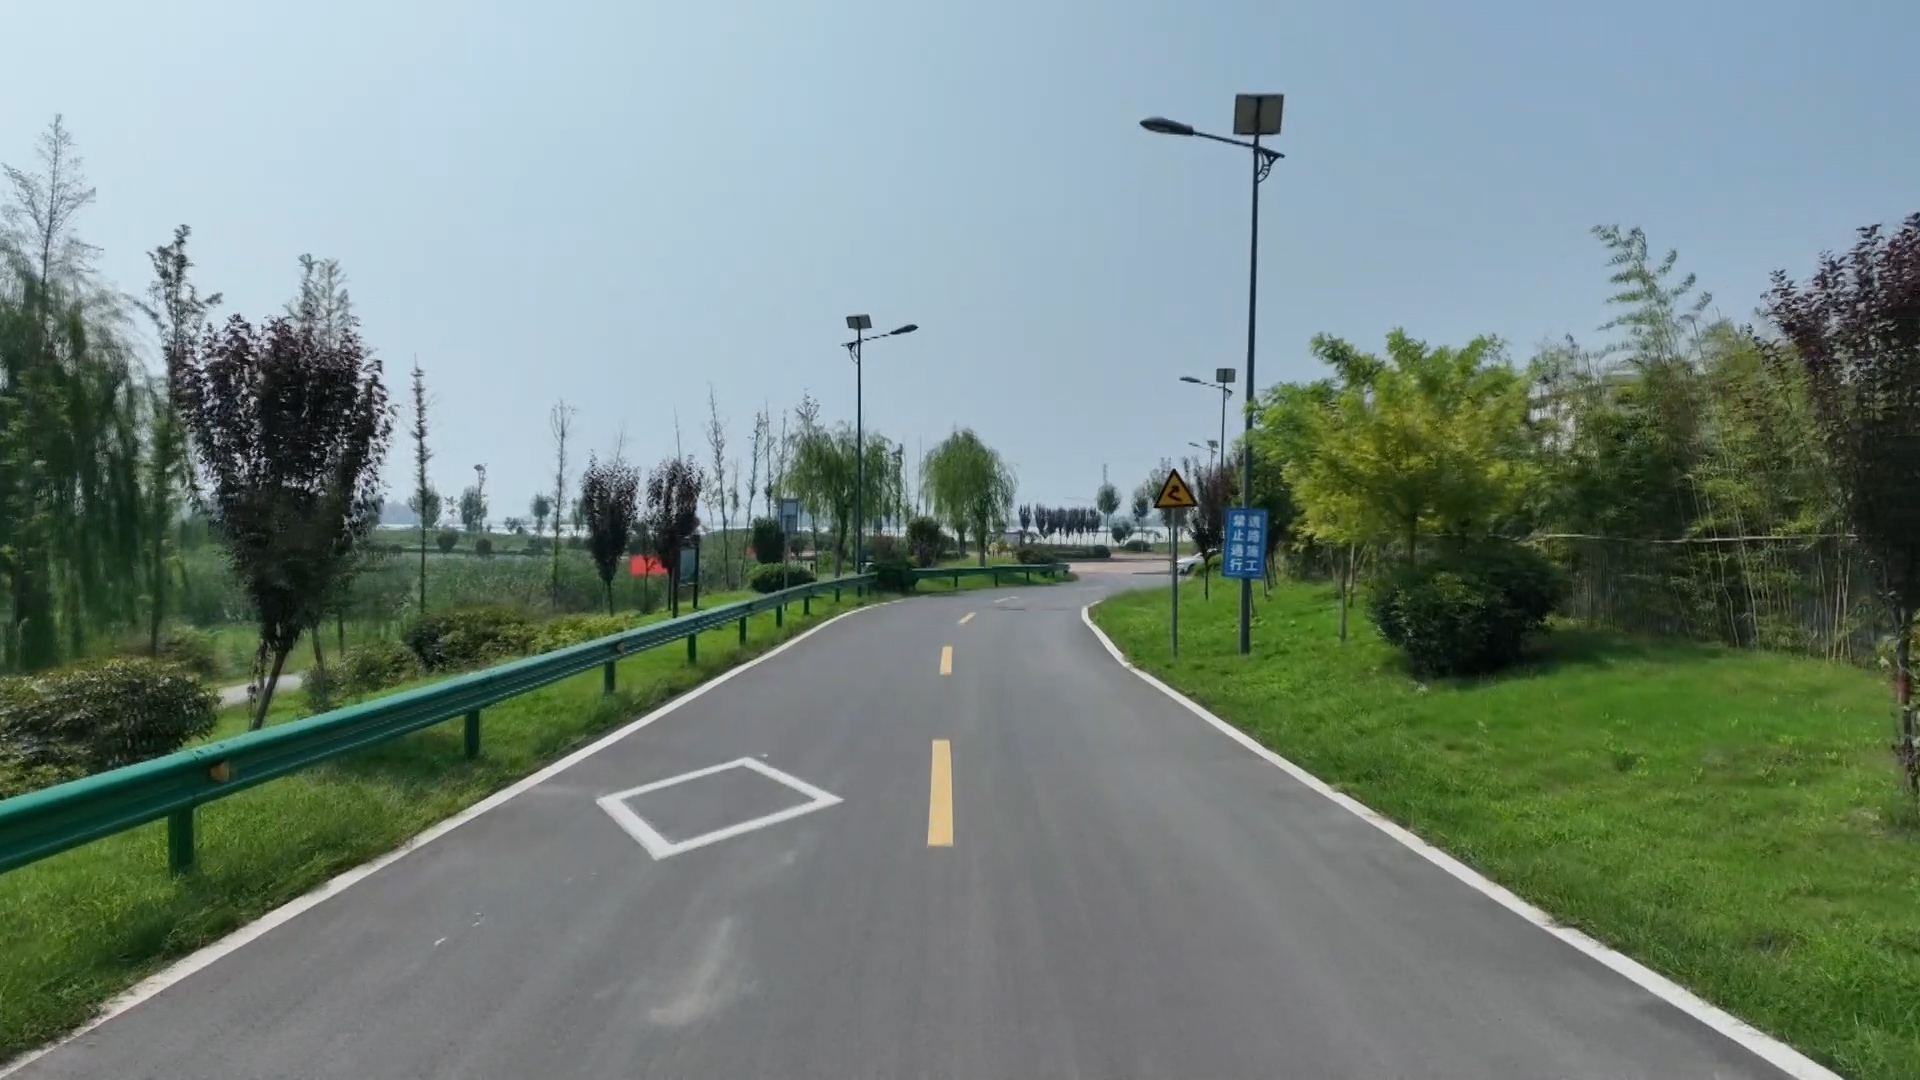 枣庄薛城建好“四好农村路” 绘就美丽乡村新画卷